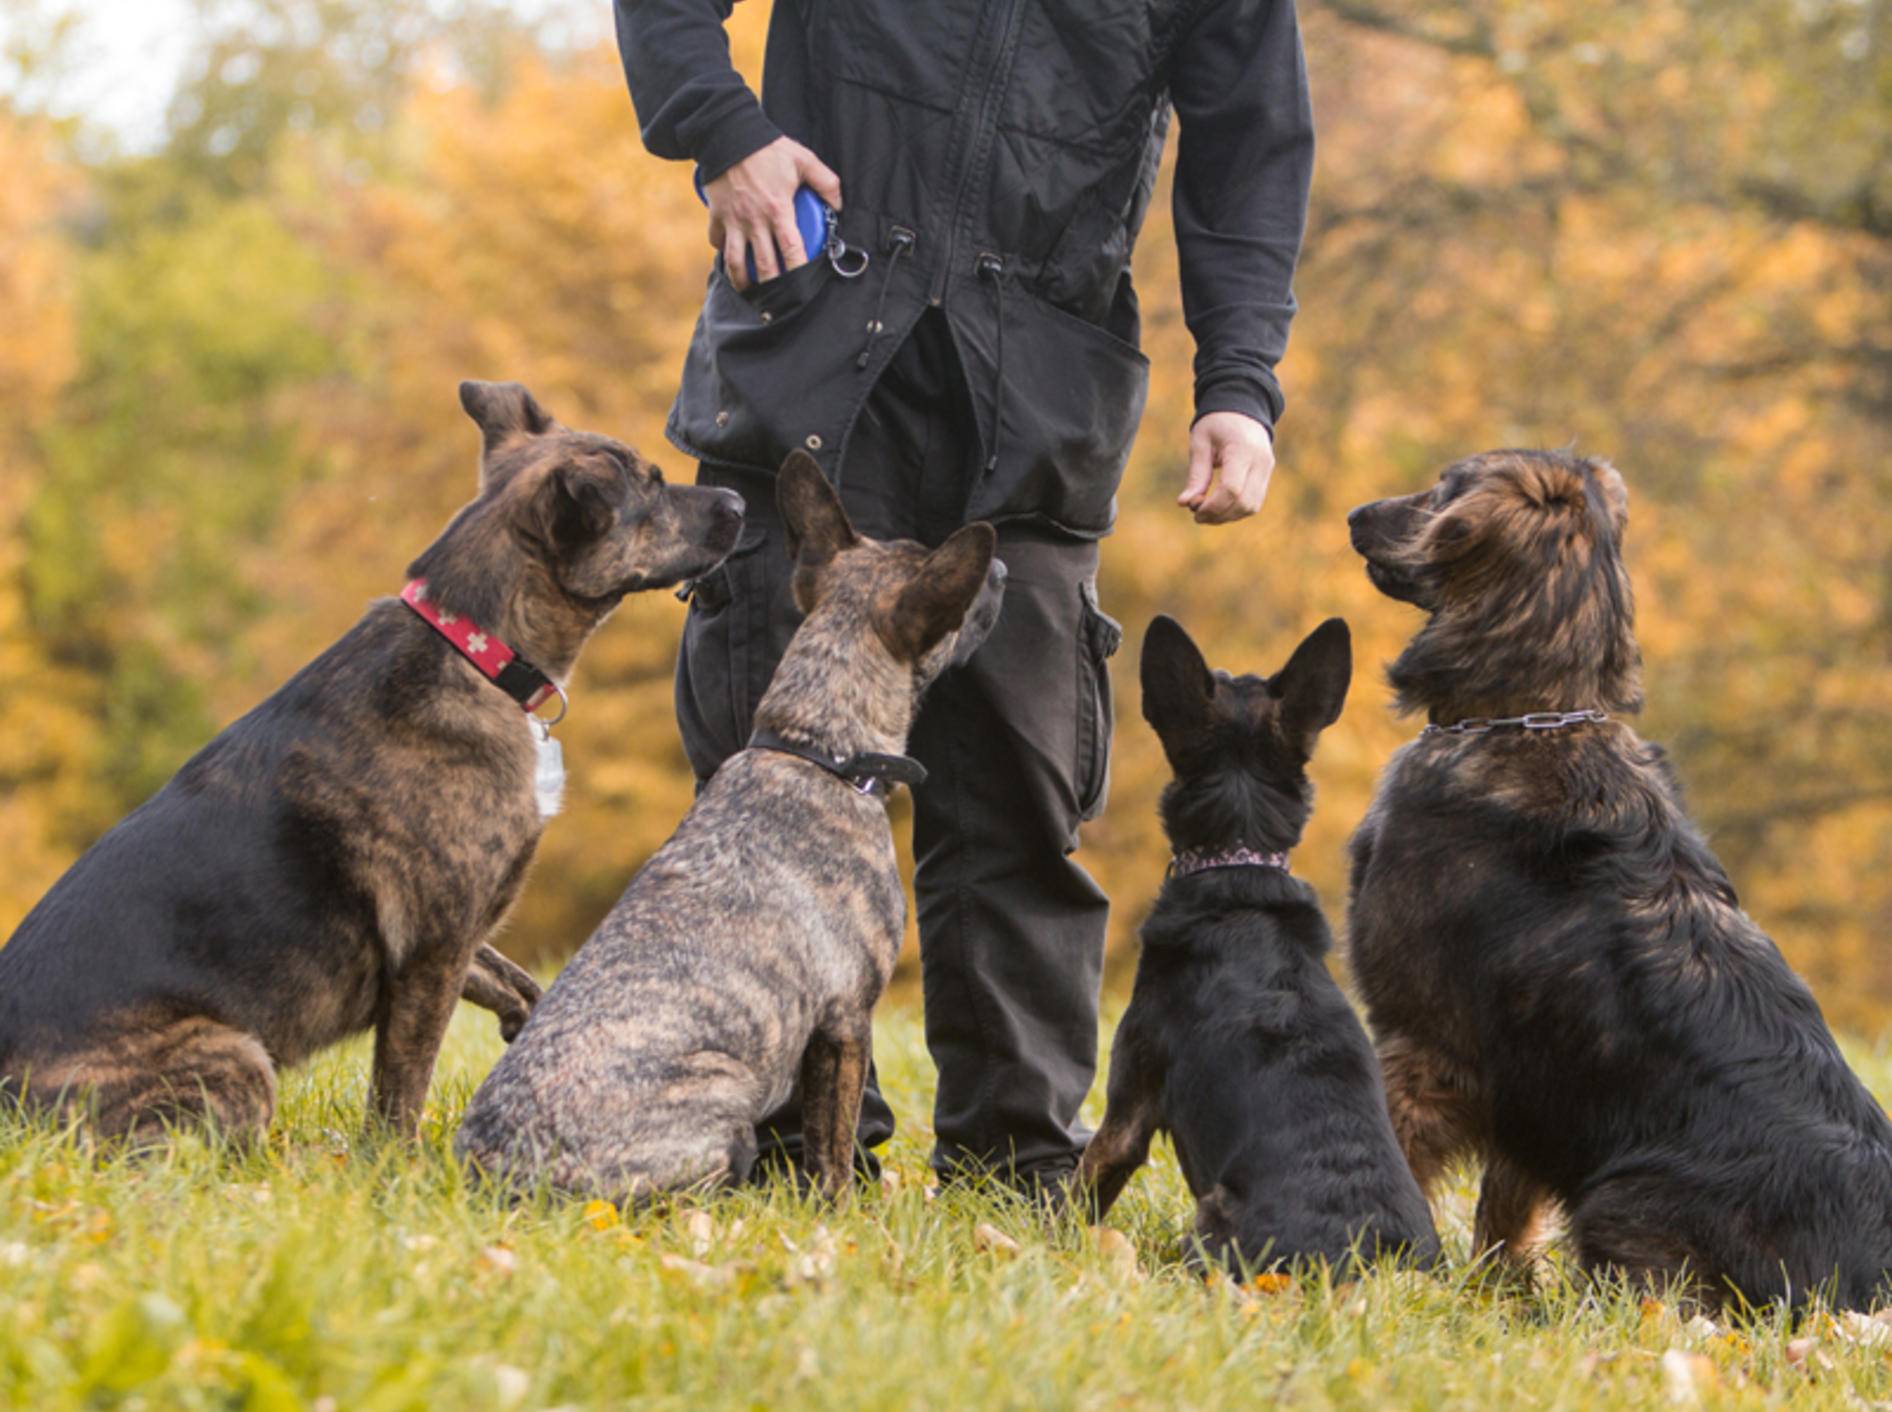 Gruppentraining in der Hundeschule ist meist die günstigste Variante – Bild: Shutterstock / Hysteria